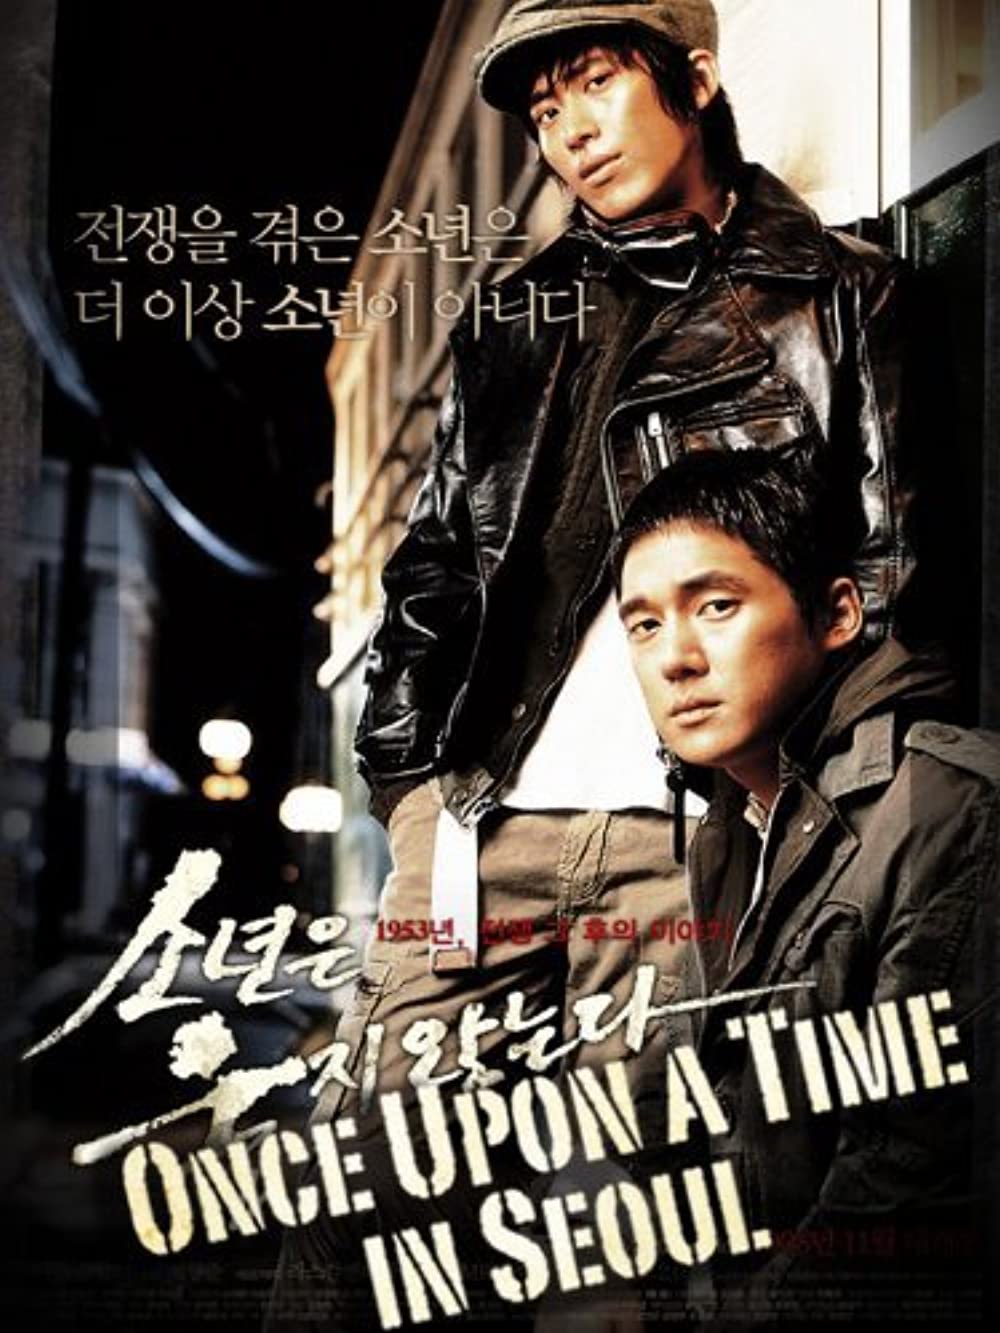 Download So-nyeon-eun wool-ji anh-neun-da Movie | So-nyeon-eun Wool-ji Anh-neun-da